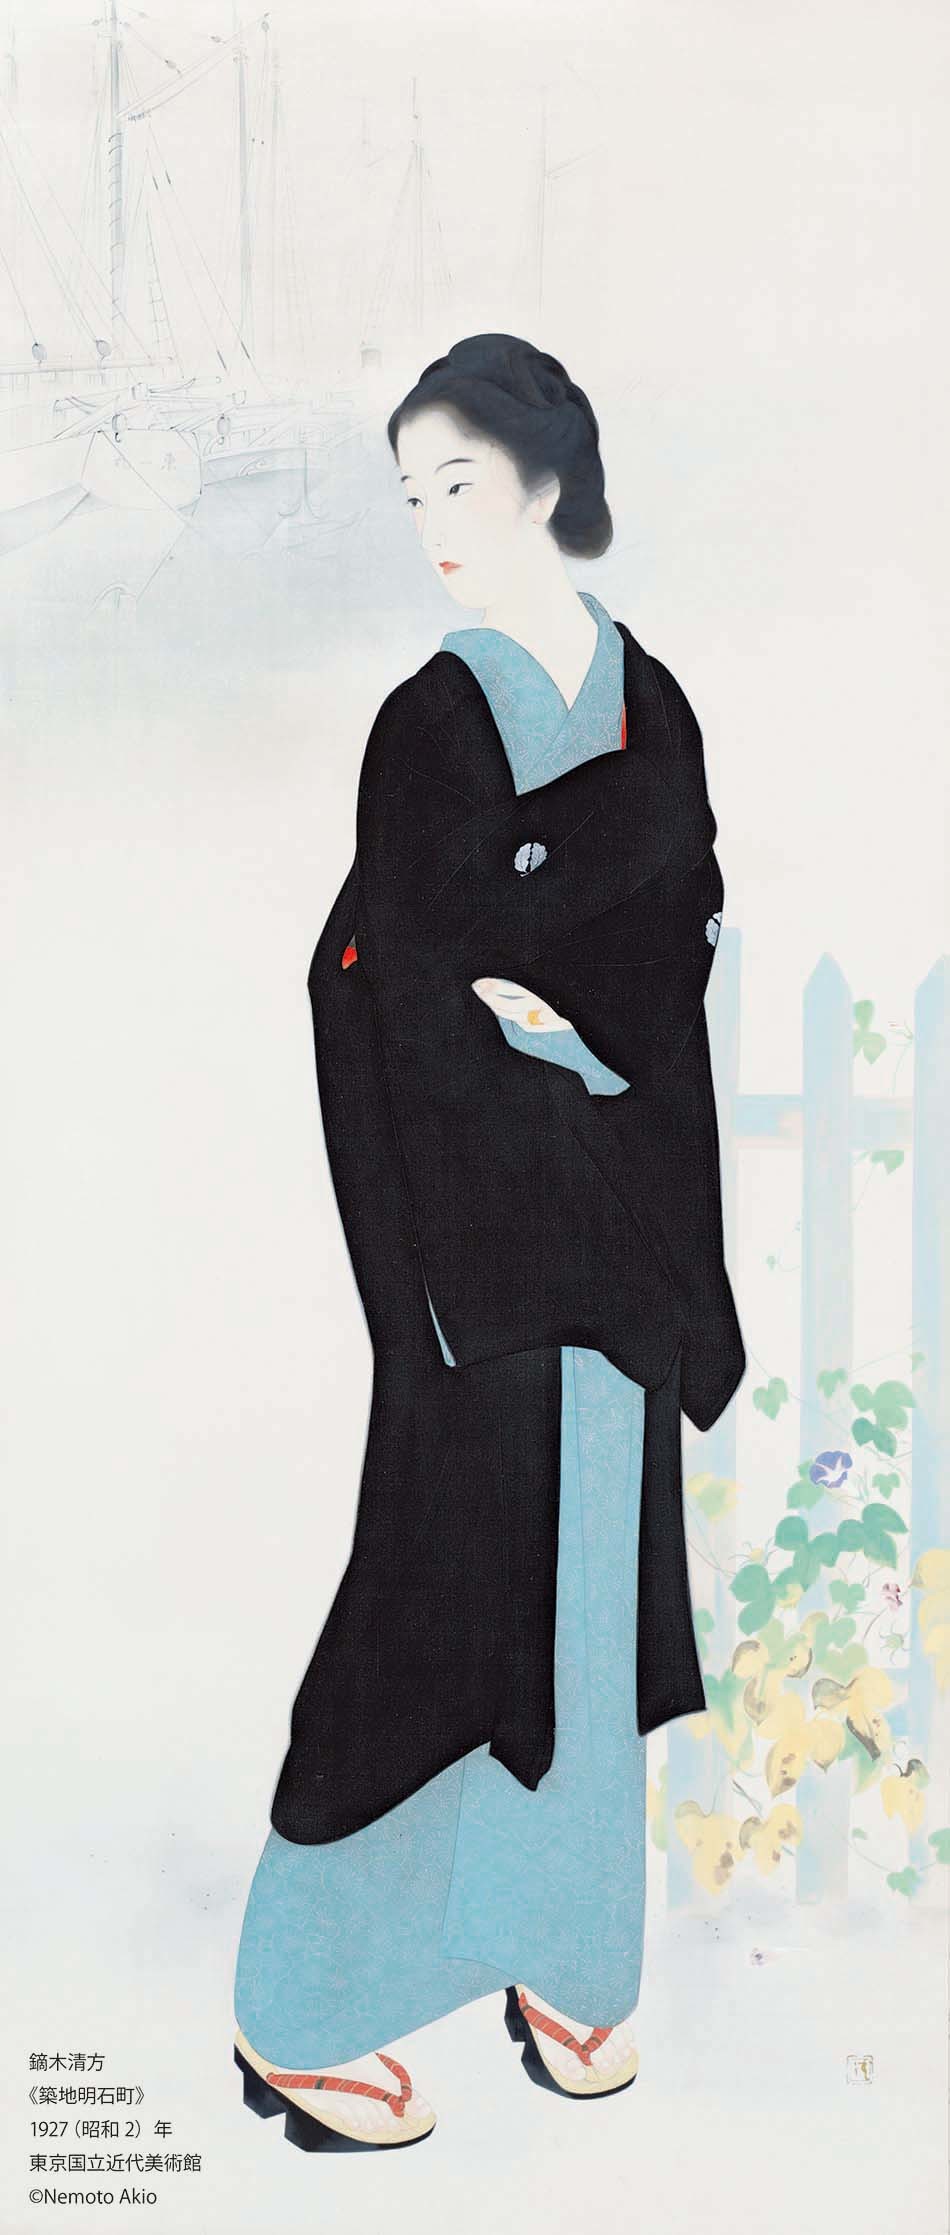 鏑木清方「築地明石町」 1927（昭和2）年、東京国立近代美術館、通期展示、絹本彩色・軸、173.5×74.0cm